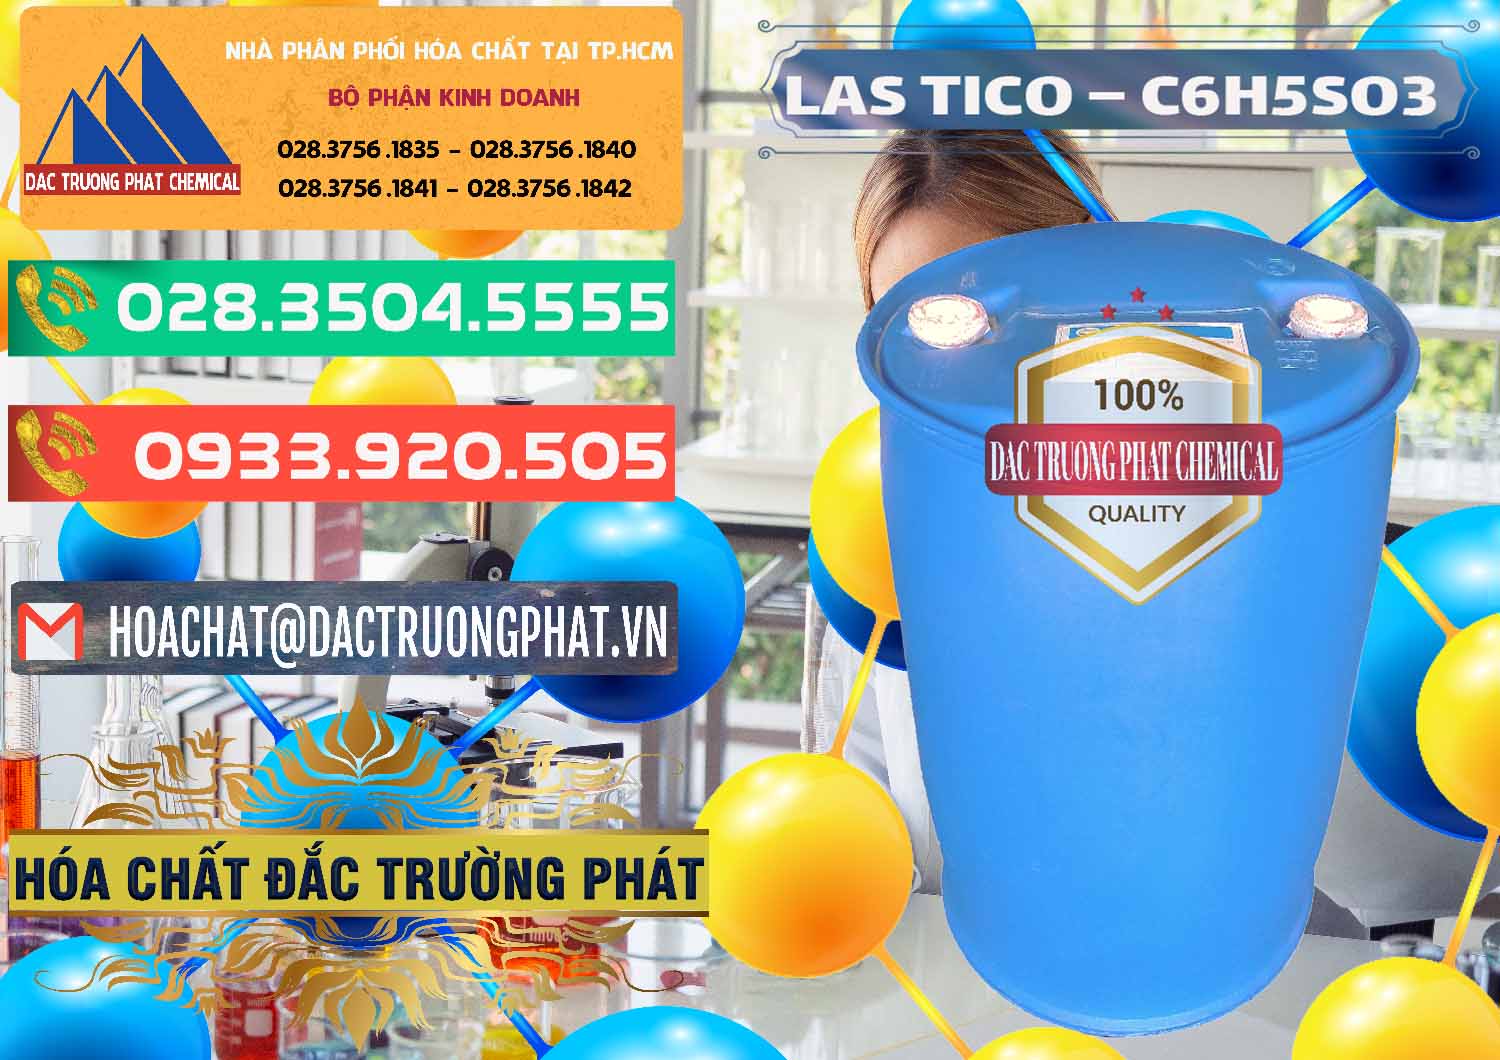 Công ty cung ứng & phân phối Chất tạo bọt Las H Tico Việt Nam - 0190 - Chuyên bán và phân phối hóa chất tại TP.HCM - congtyhoachat.com.vn